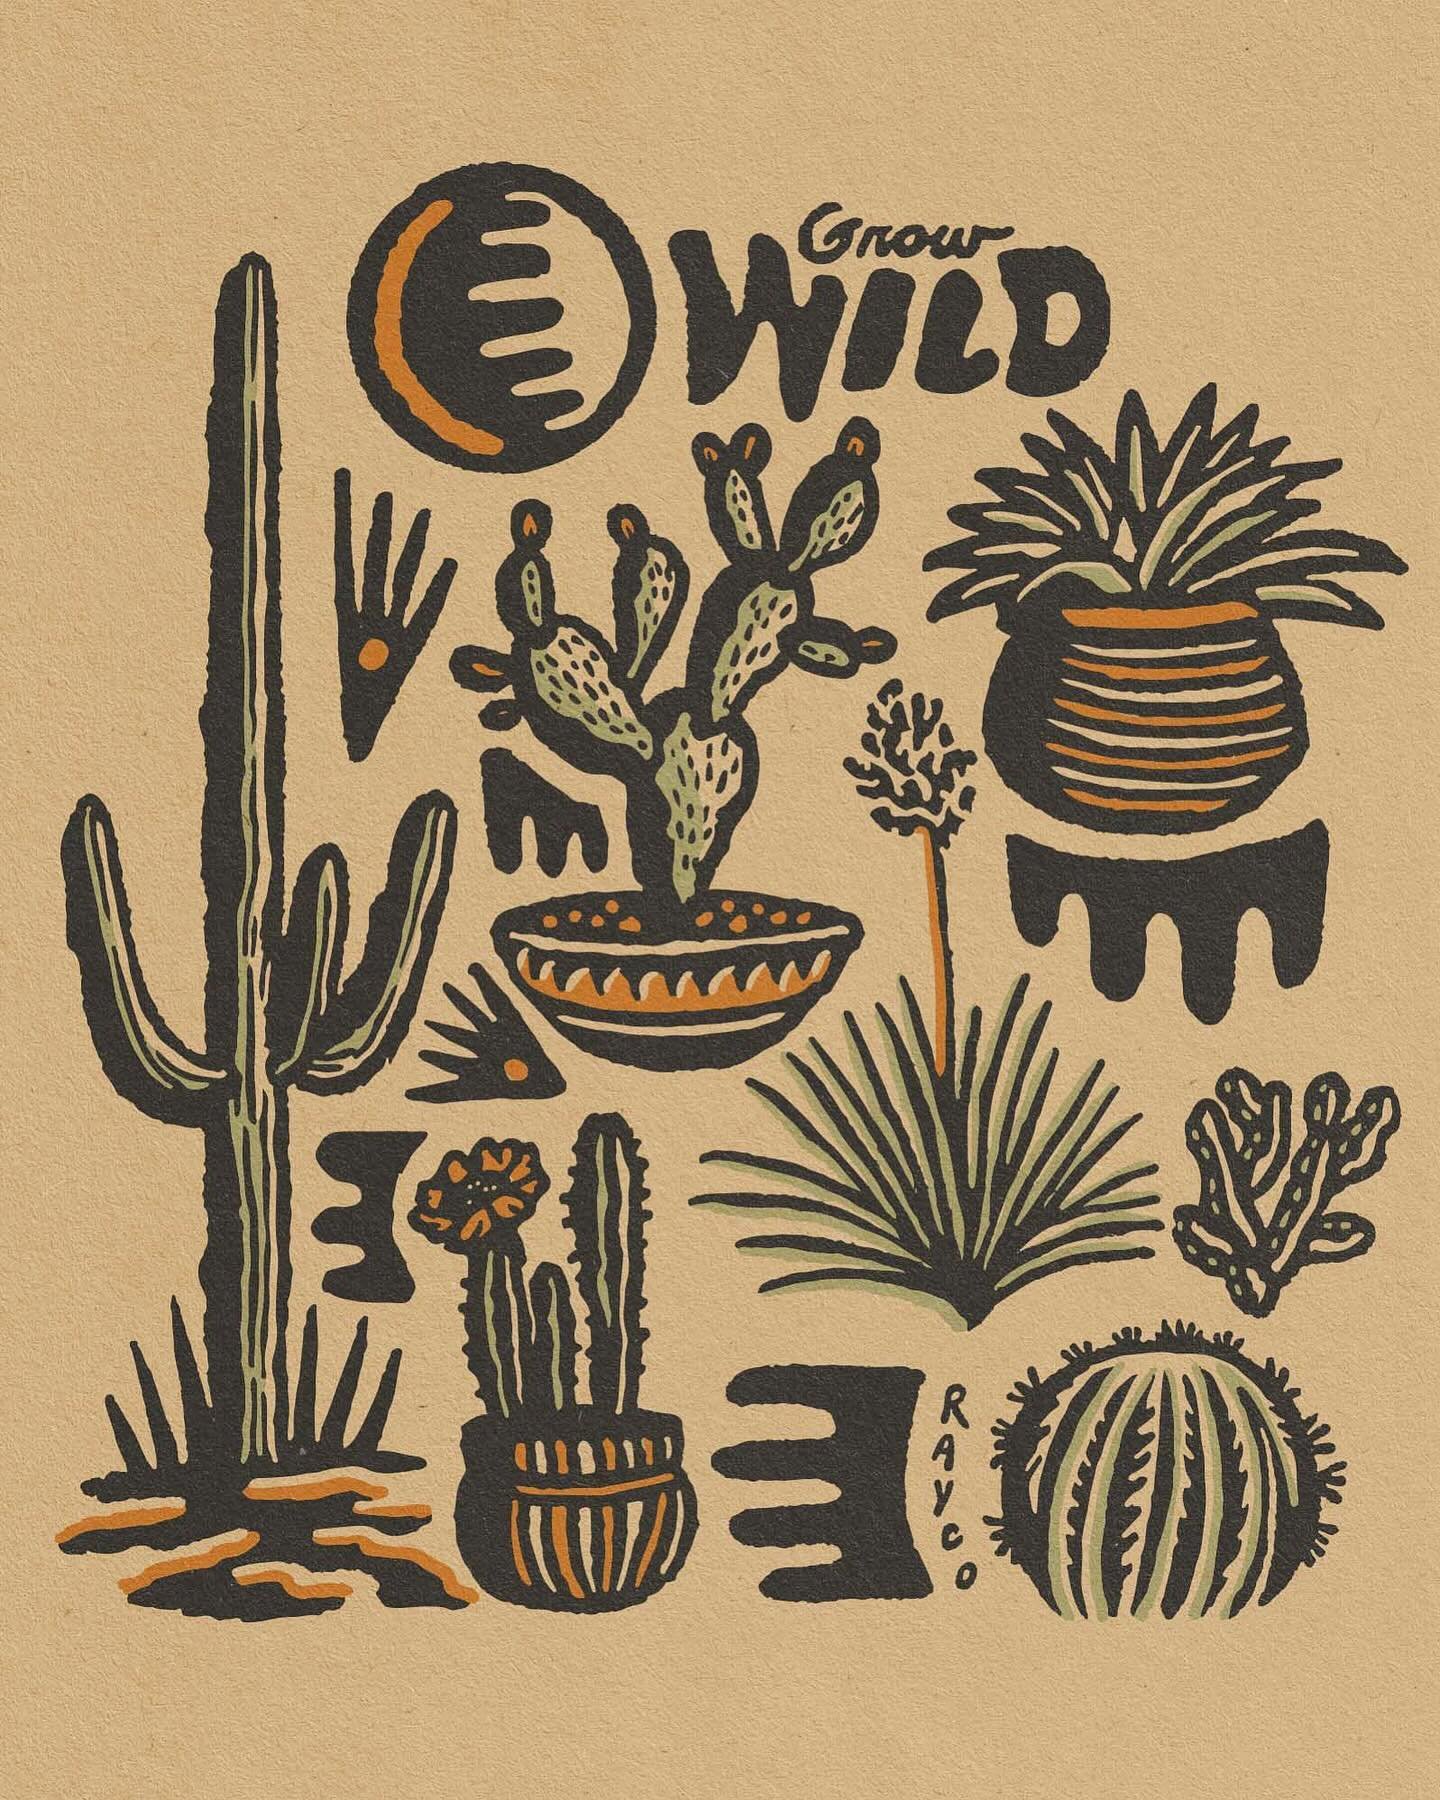 Call me the cactus queen 🌵👸🏼🌵
&bull;
&bull;
&bull;
#cactusqueen #ilovecactus🌵 #cactusillustration #cactusart #cactusdesign #wildcactus #growwild #illustration #desertdesign #natureillustration